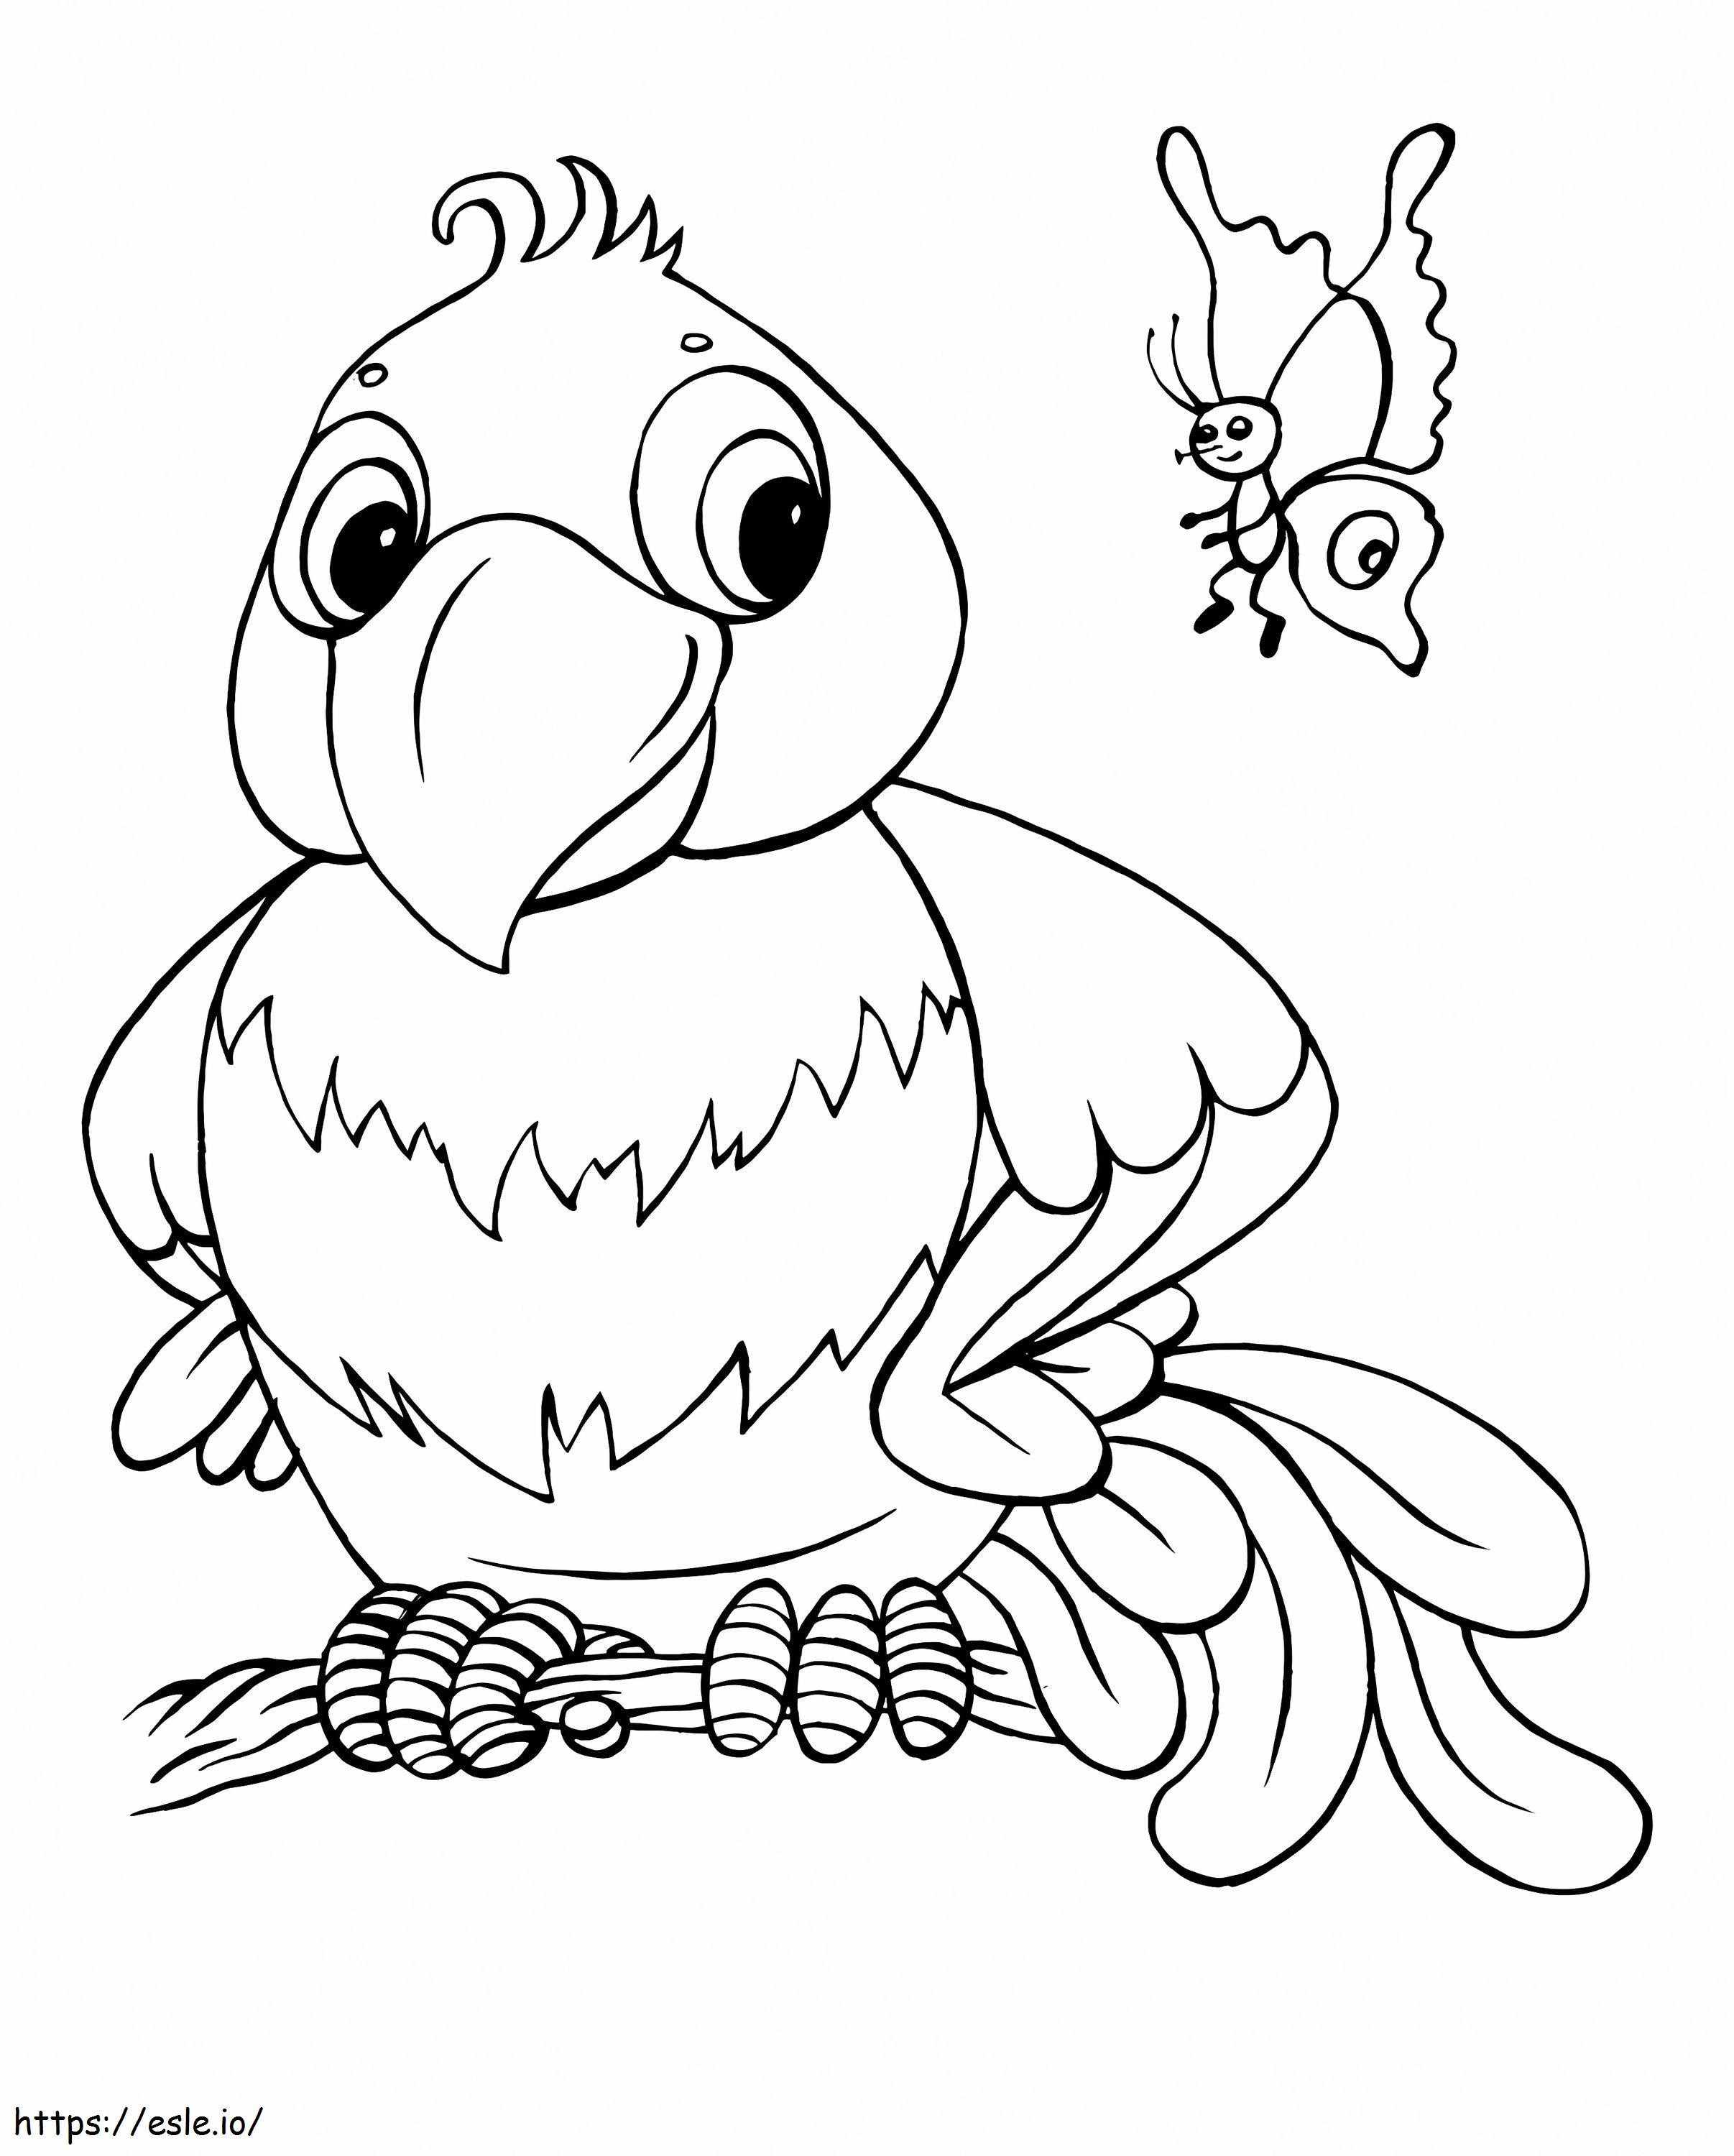 1560411970 papagaio e borboleta dos desenhos animados A4 para colorir